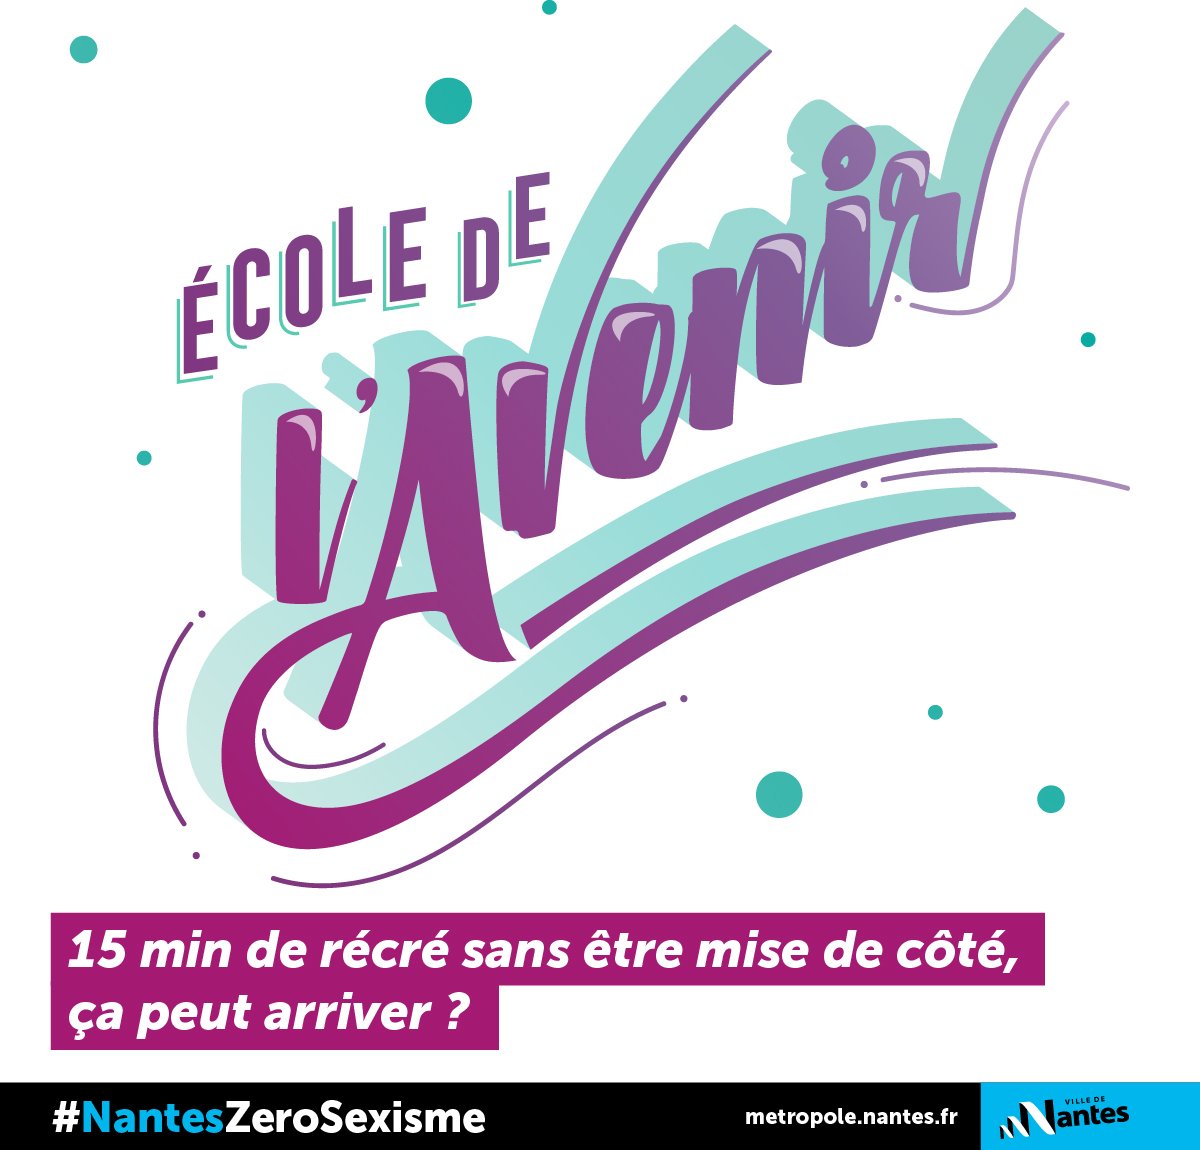 #NantesZeroSexisme #8mars
A #Nantes 👉 Objectif Zéro Sexisme !
Fière de cette belle campagne d’information et de sensibilisation contre les inégalités, les stéréotypes de genre, le harcèlement dans la rue et les transports. Vous ne l'avez pas encore vue ? 🤔 Retrouvez-la ici 👇